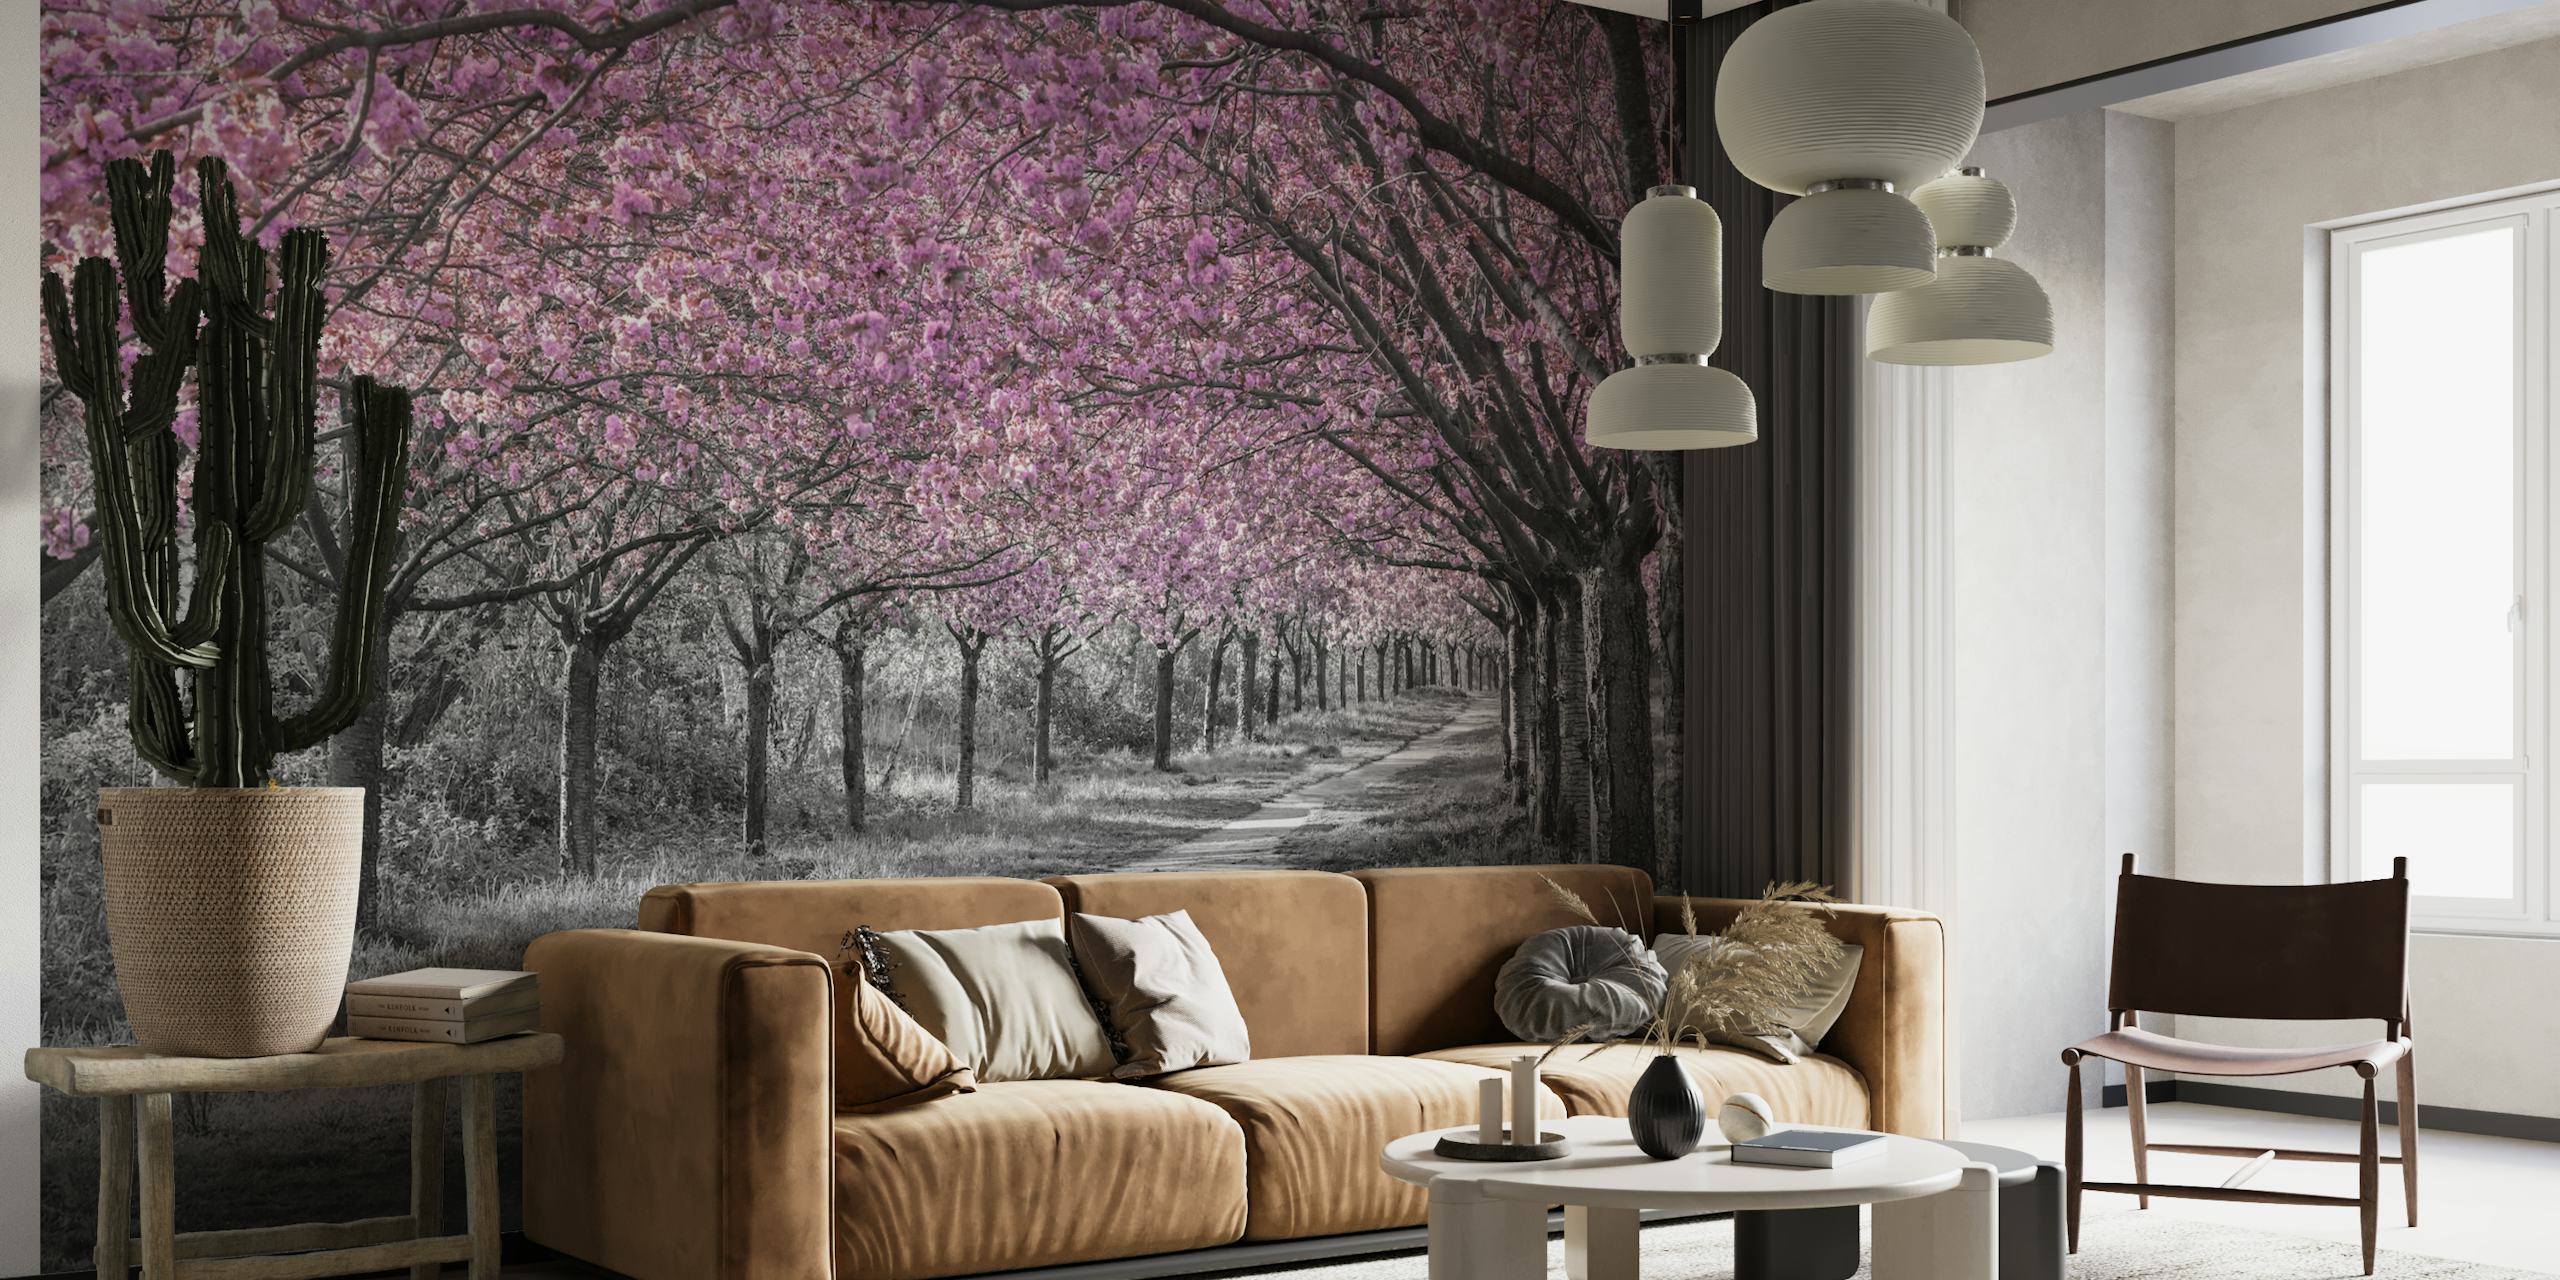 Fototapete „Kirschblütenweg“ mit rosa Blüten und einem Graustufen-Hintergrund